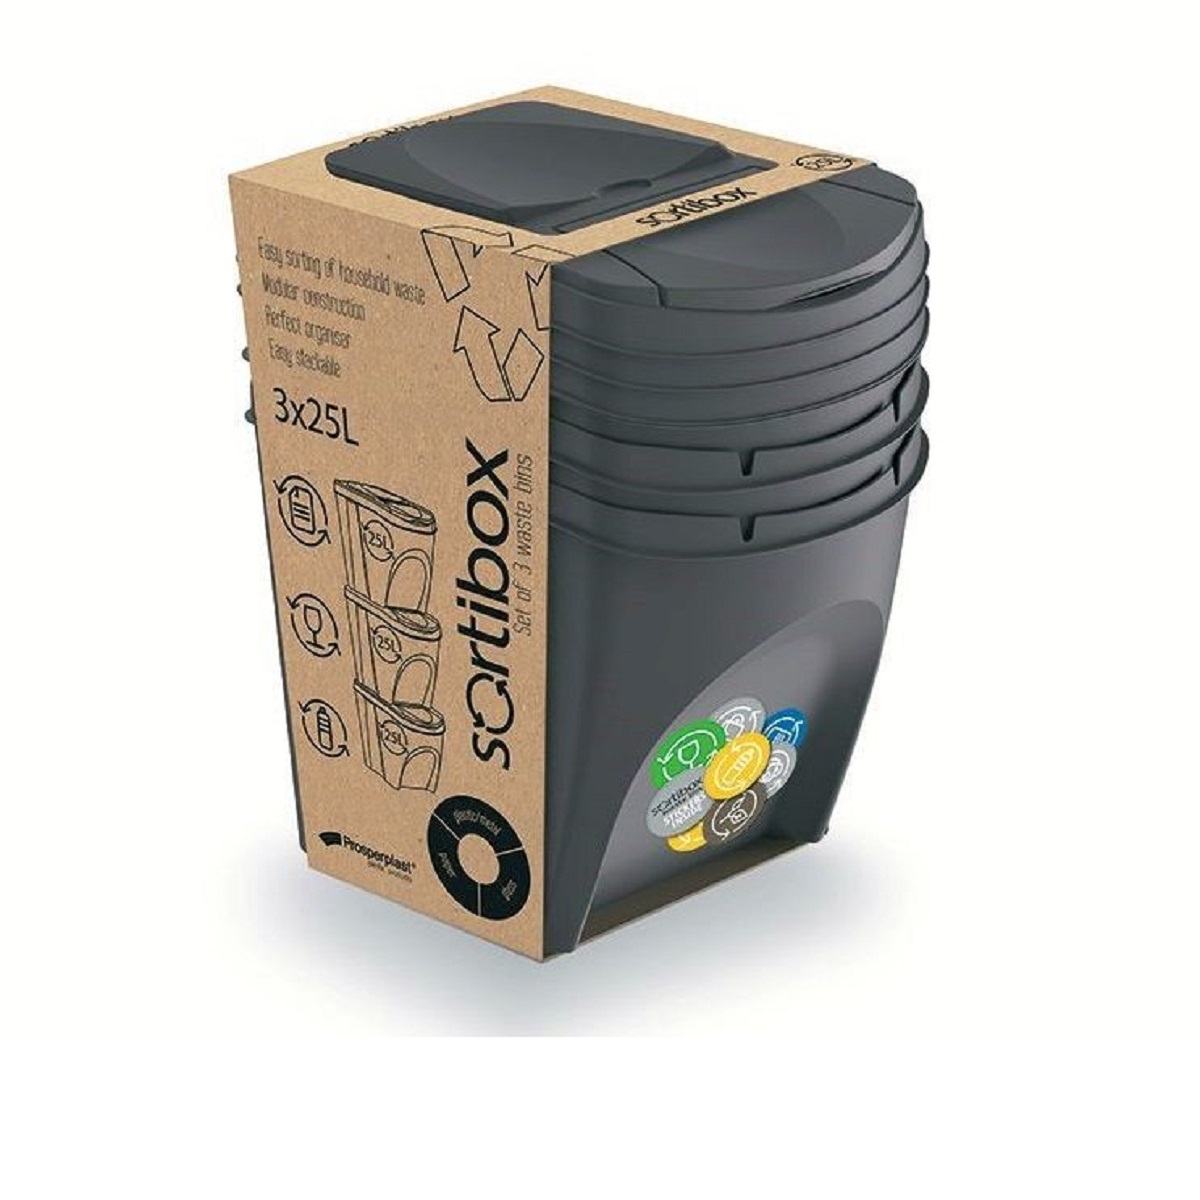 Sada odpadkových košů SORTIBOX, 3x25l